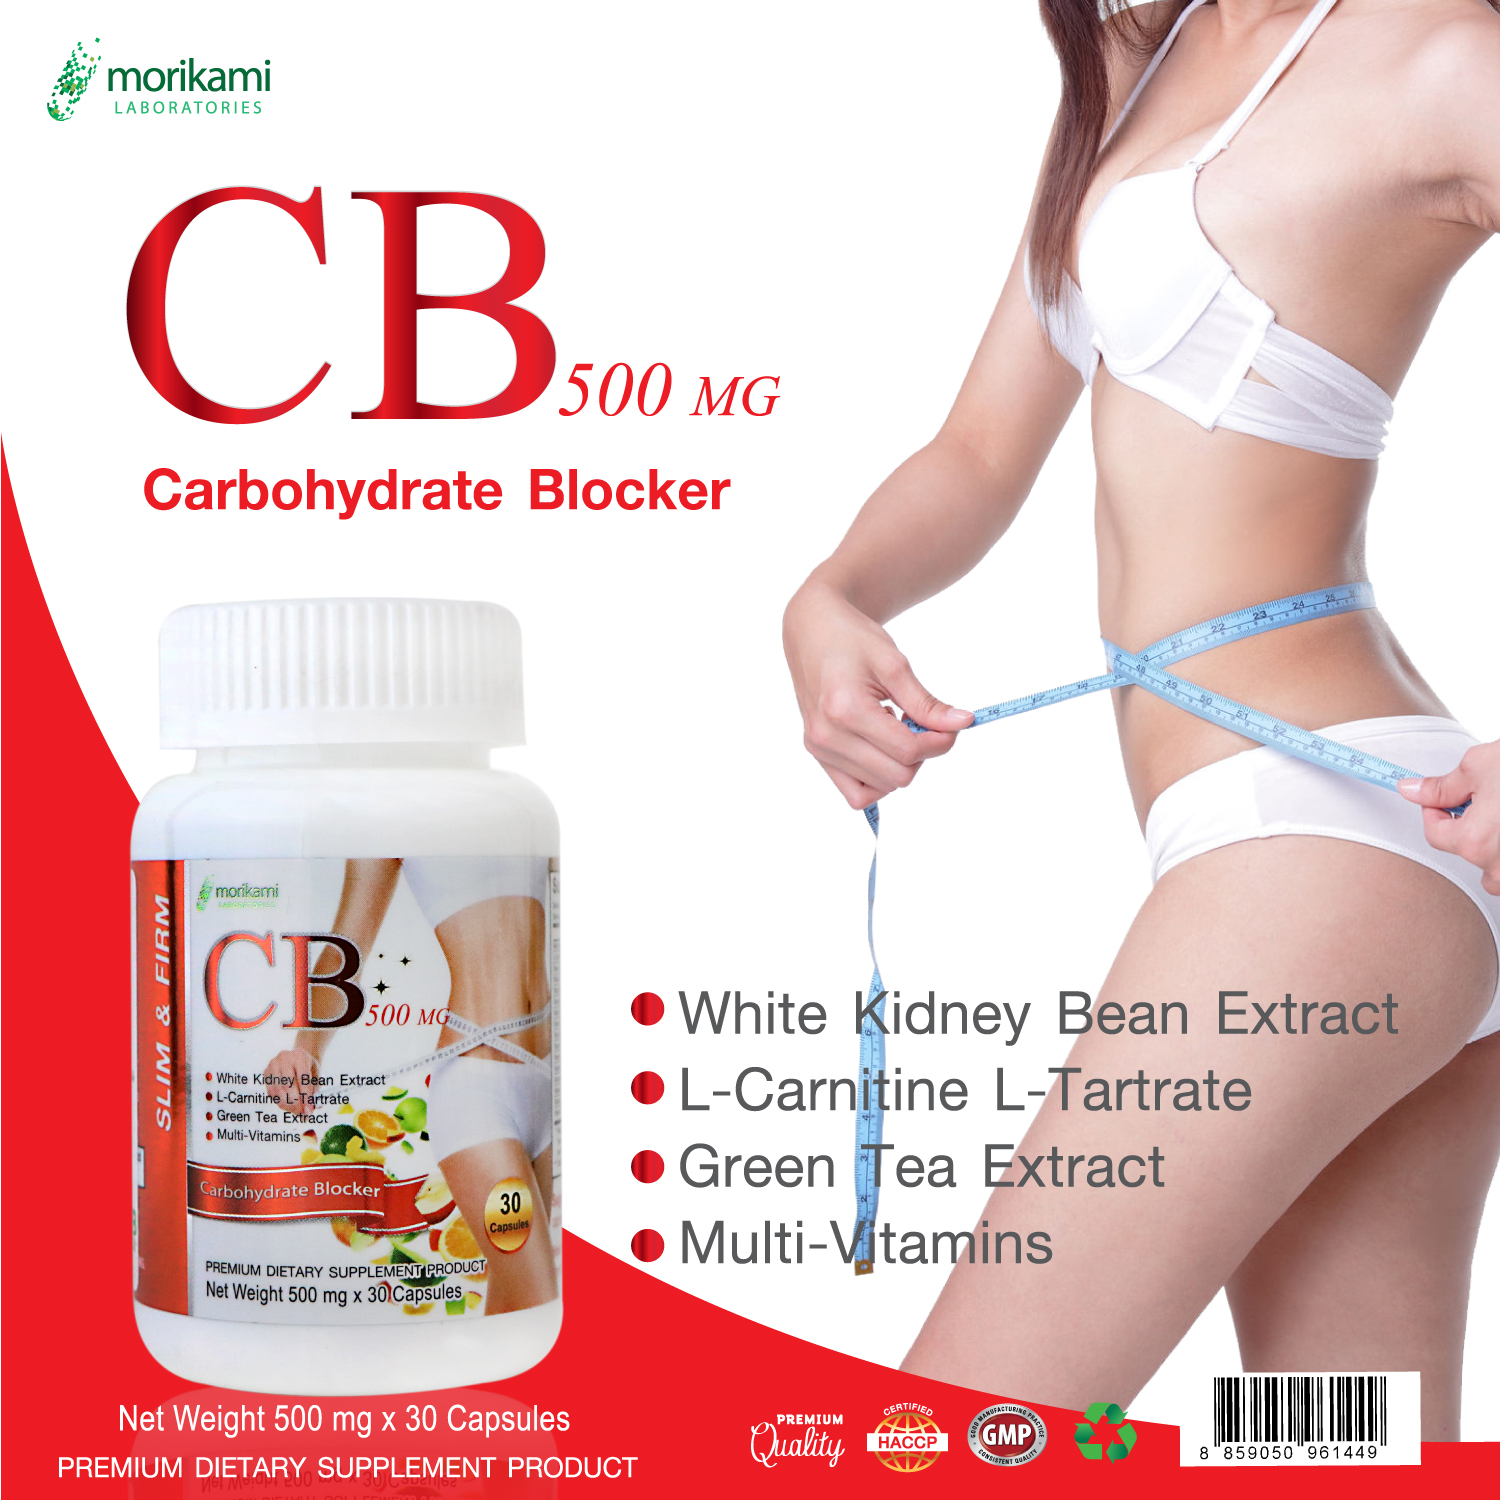 CB500 ซีบี500 x 1 ขวด เผาผลาญไขมัน บล็อคแป้ง ควบคุมน้ำหนัก มีส่วนช่วยกระชับสัดส่วน โมริคามิ หุ่นสวย หุ่นดี Morikami Carbohydrate Blocker